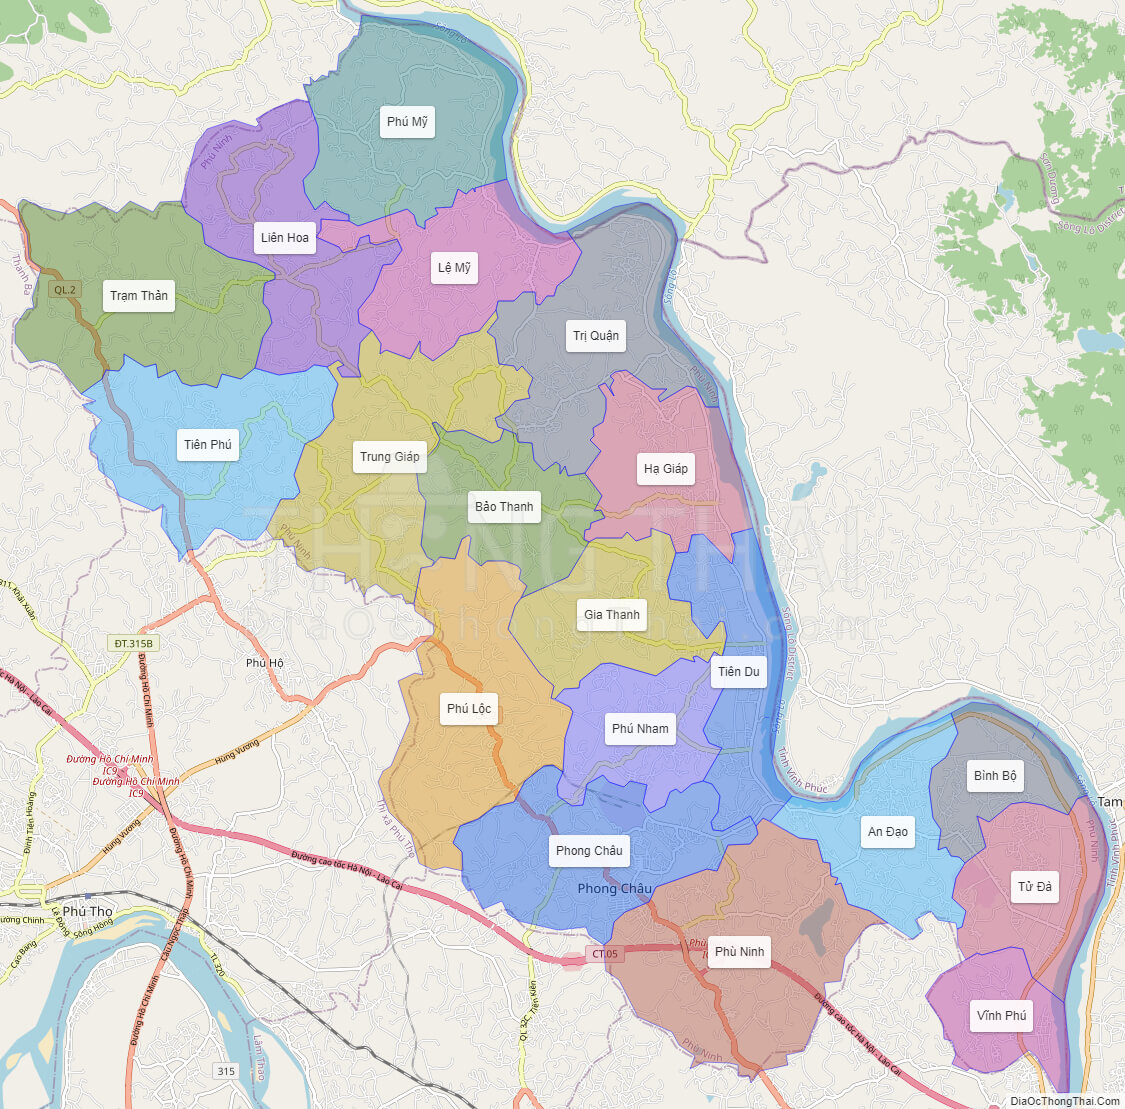 Khám phá huyện Phù Ninh, Phú Thọ thông qua bản đồ cập nhật đến năm 2024! Bạn sẽ được tìm hiểu về địa danh, các cơ sở hạ tầng và phát triển kinh tế của địa phương này một cách chi tiết và chính xác nhất.